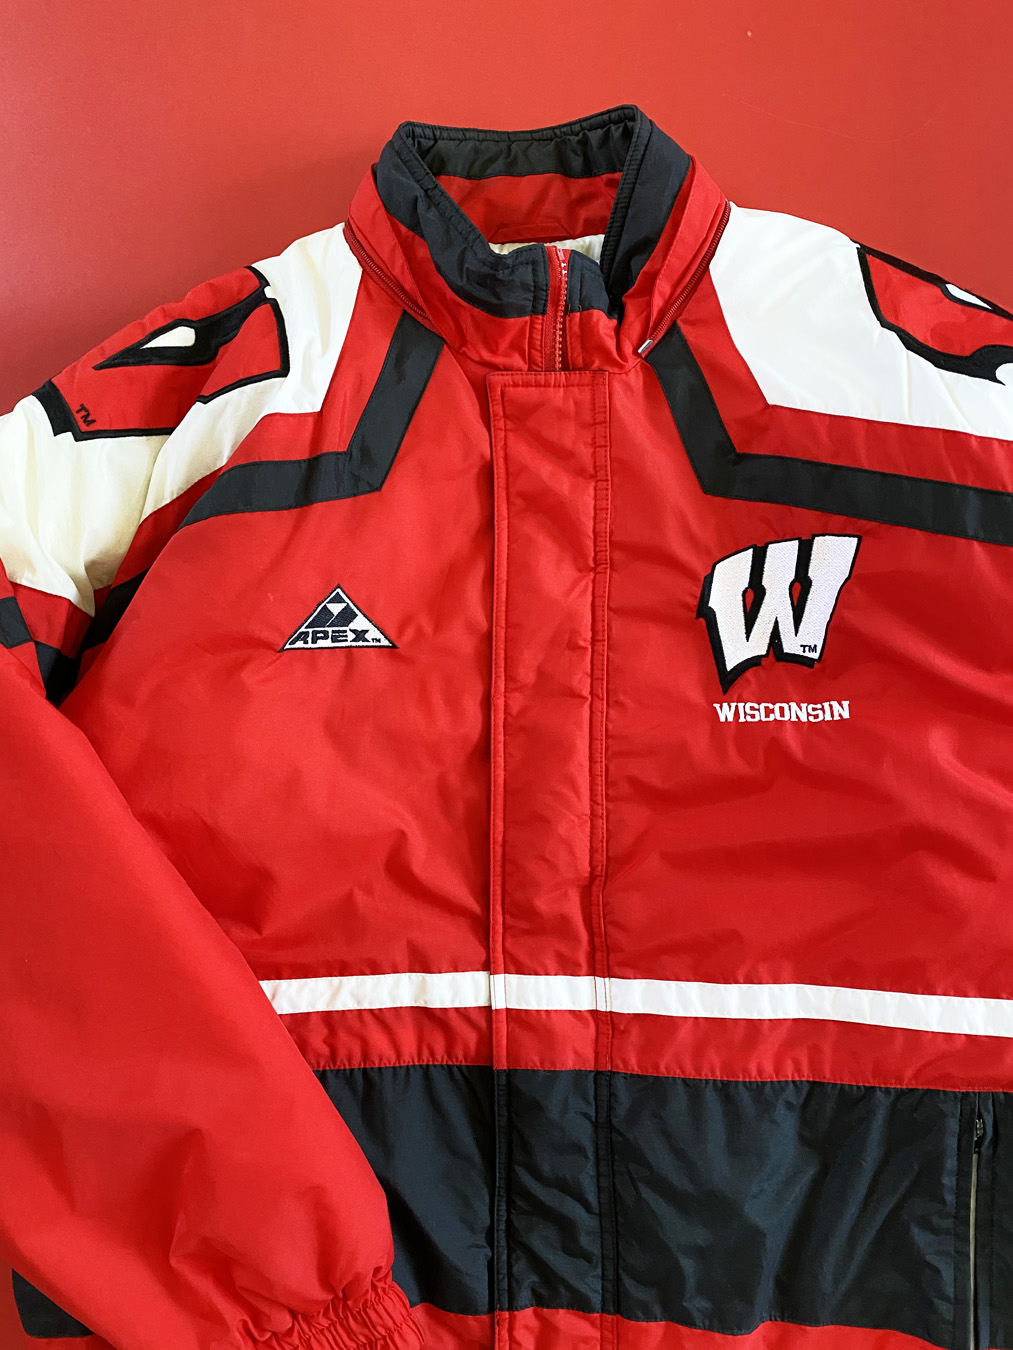 Wisconsin Jacket, Wisconsin Badgers Pullover, Wisconsin Varsity Jackets,  Fleece Jacket